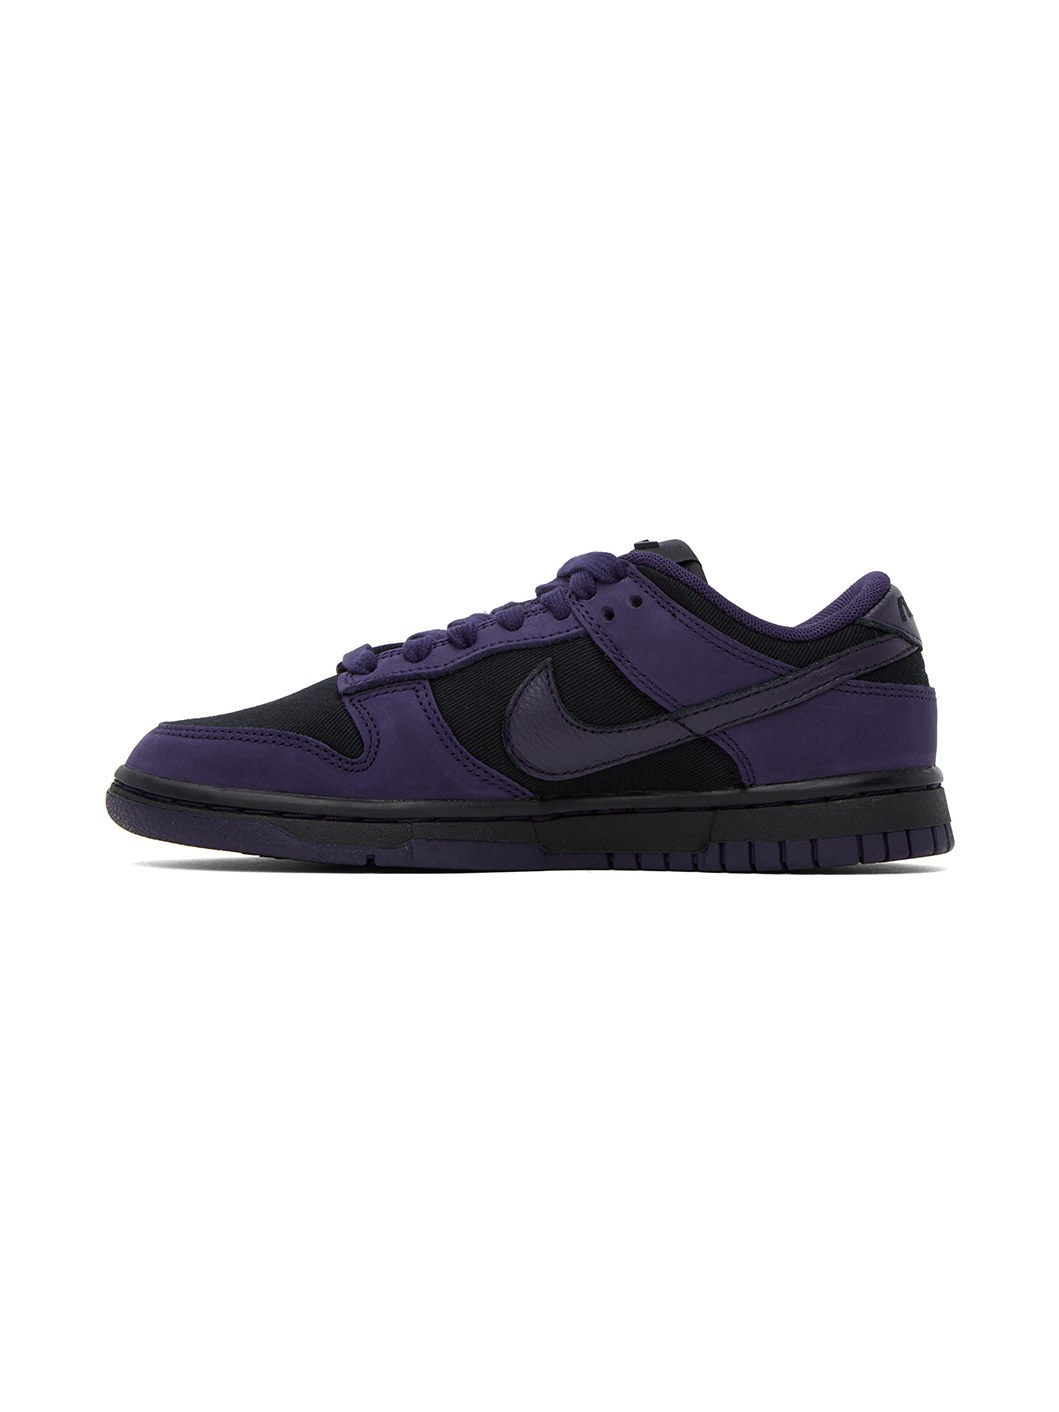 Purple & Black Dunk Low LX Sneakers - 3